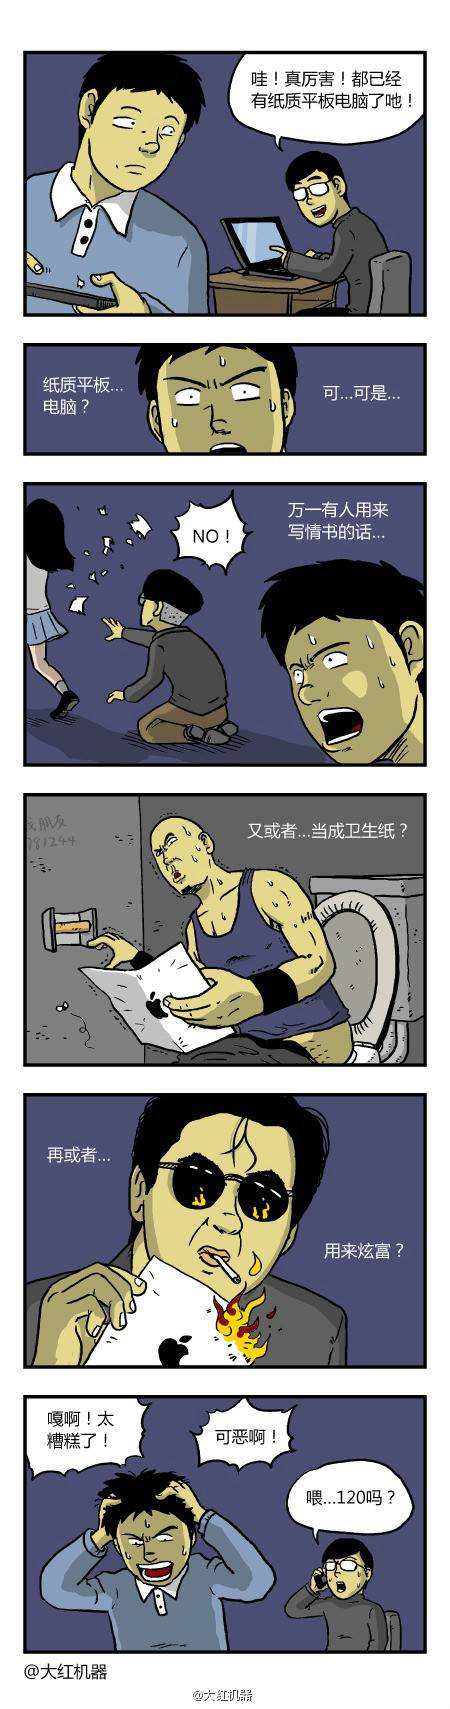 邪恶漫画爆笑囧图第363刊：黑猫的误解